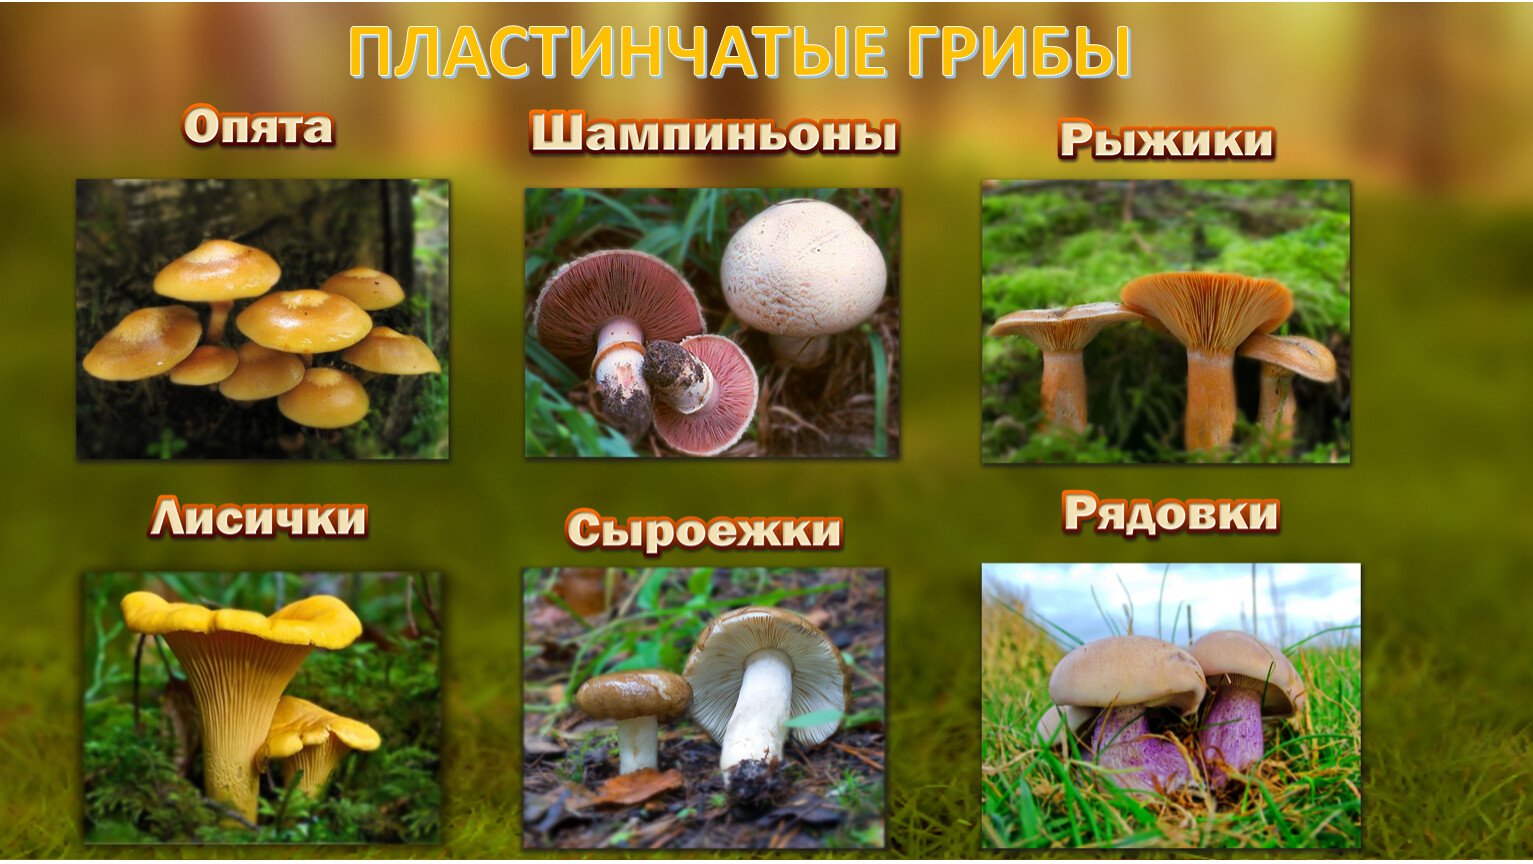 Какие съедобные грибы относятся к группе пластинчатых. Трубчатые и пластинчатые грибы. Пластинчатые грибы. Пластинчатые грибы названия. Трубчатые и пластинчатые грибы примеры.